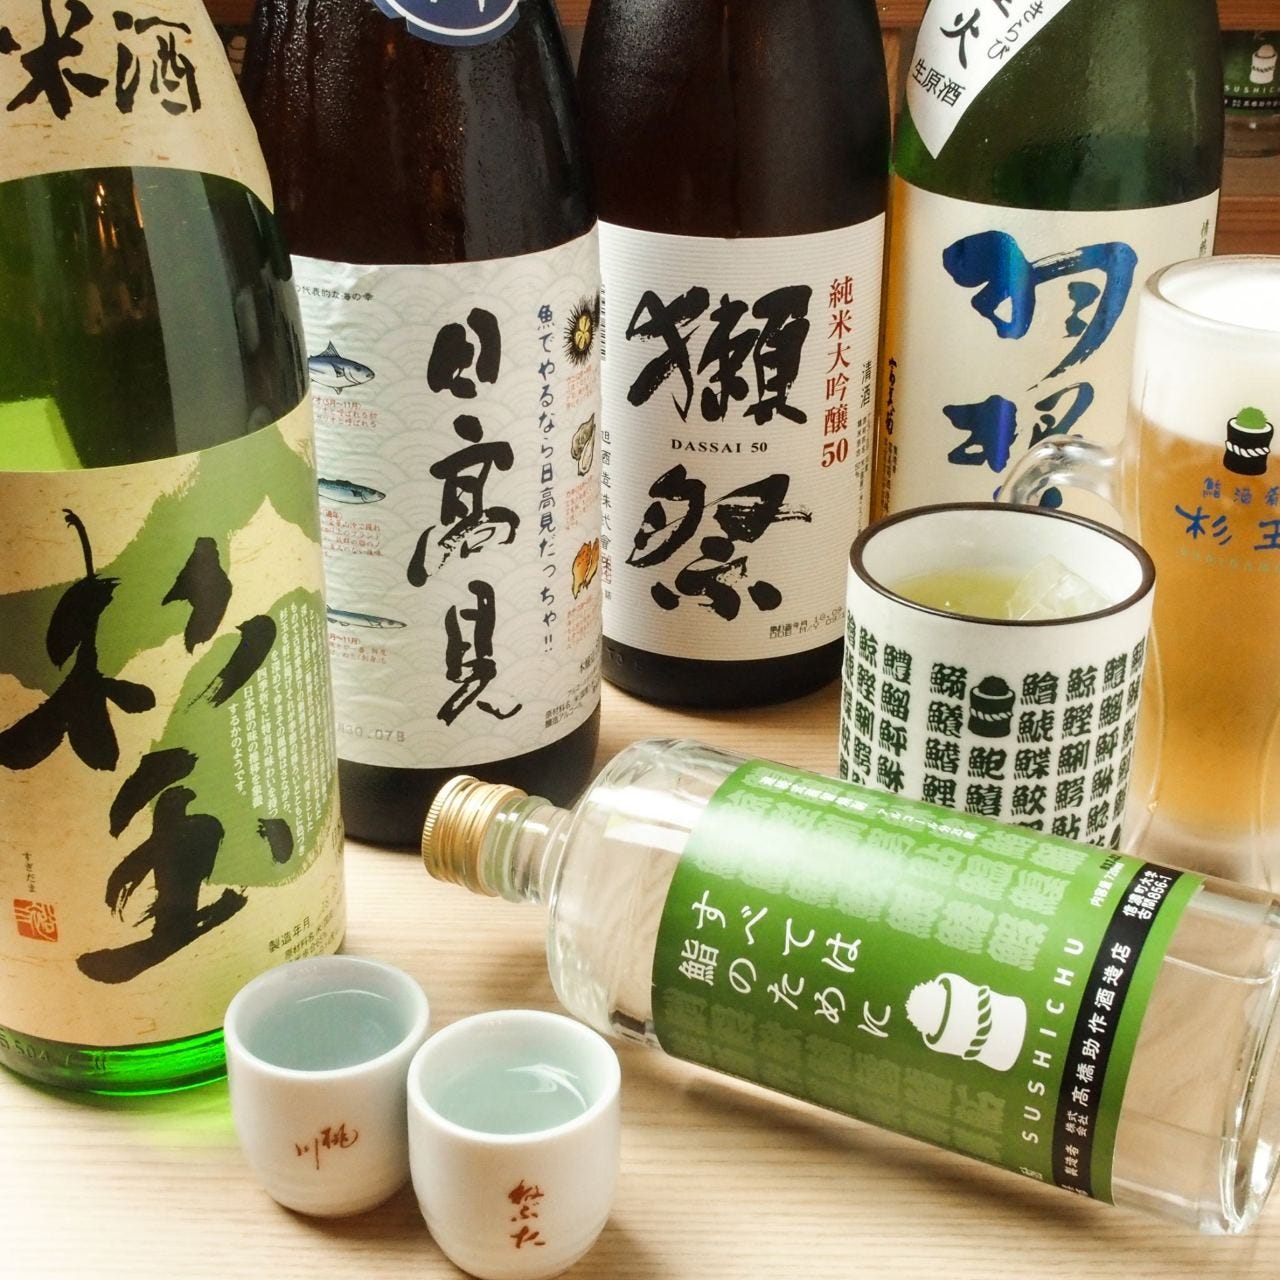 鮨・酒・肴 杉玉 武蔵境